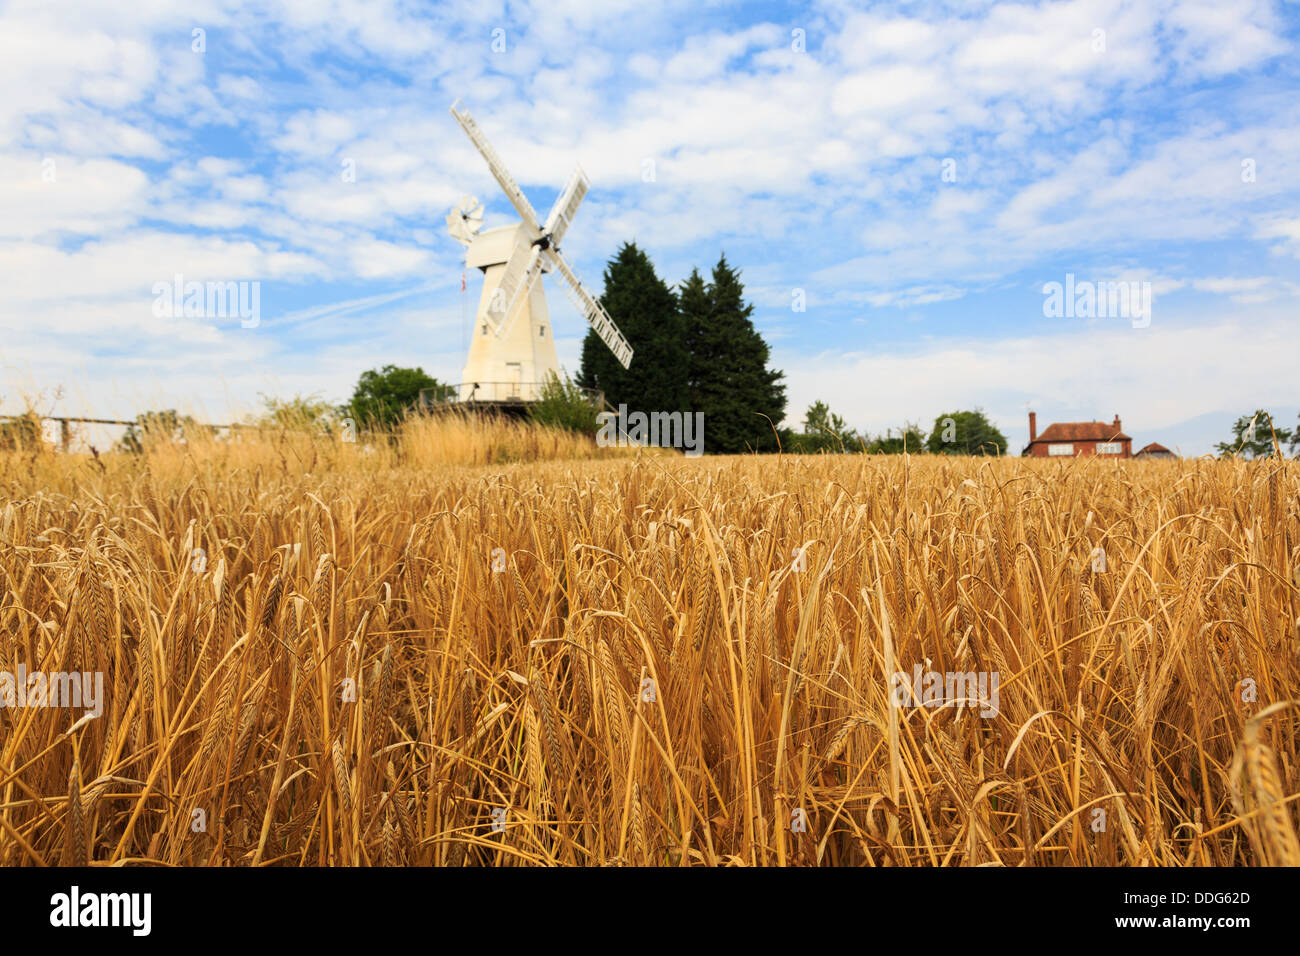 19C Kentish smock mill moulin à vent en bois blanc, au-delà d'un domaine de la récolte d'orge arables mûrs prêts pour la récolte à la fin de l'été. Woodchurch, Kent, England, UK Banque D'Images